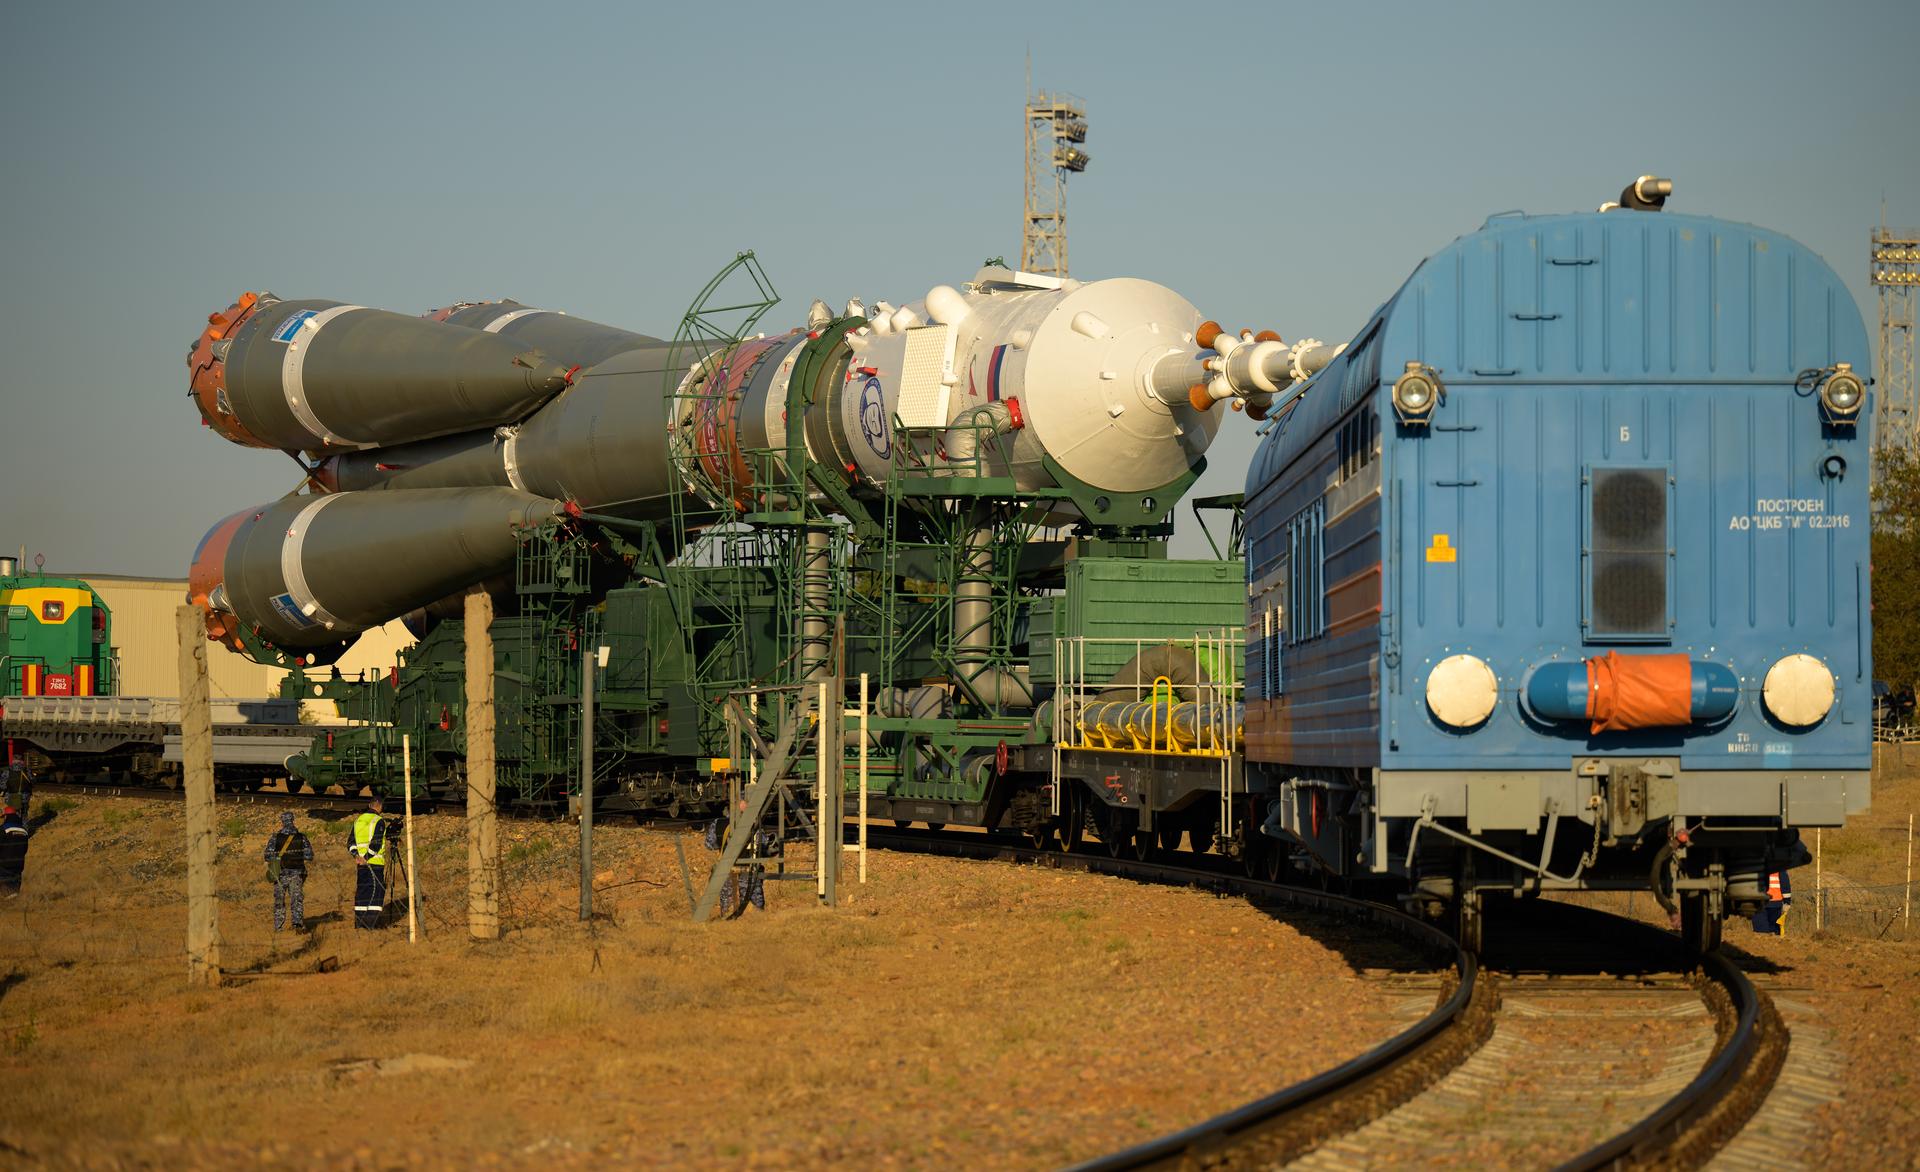 Bộ ảnh quyền lực: Nga nâng tên lửa Soyuz lên bệ, chuẩn bị chuyến bay lịch sử - Ảnh 3.